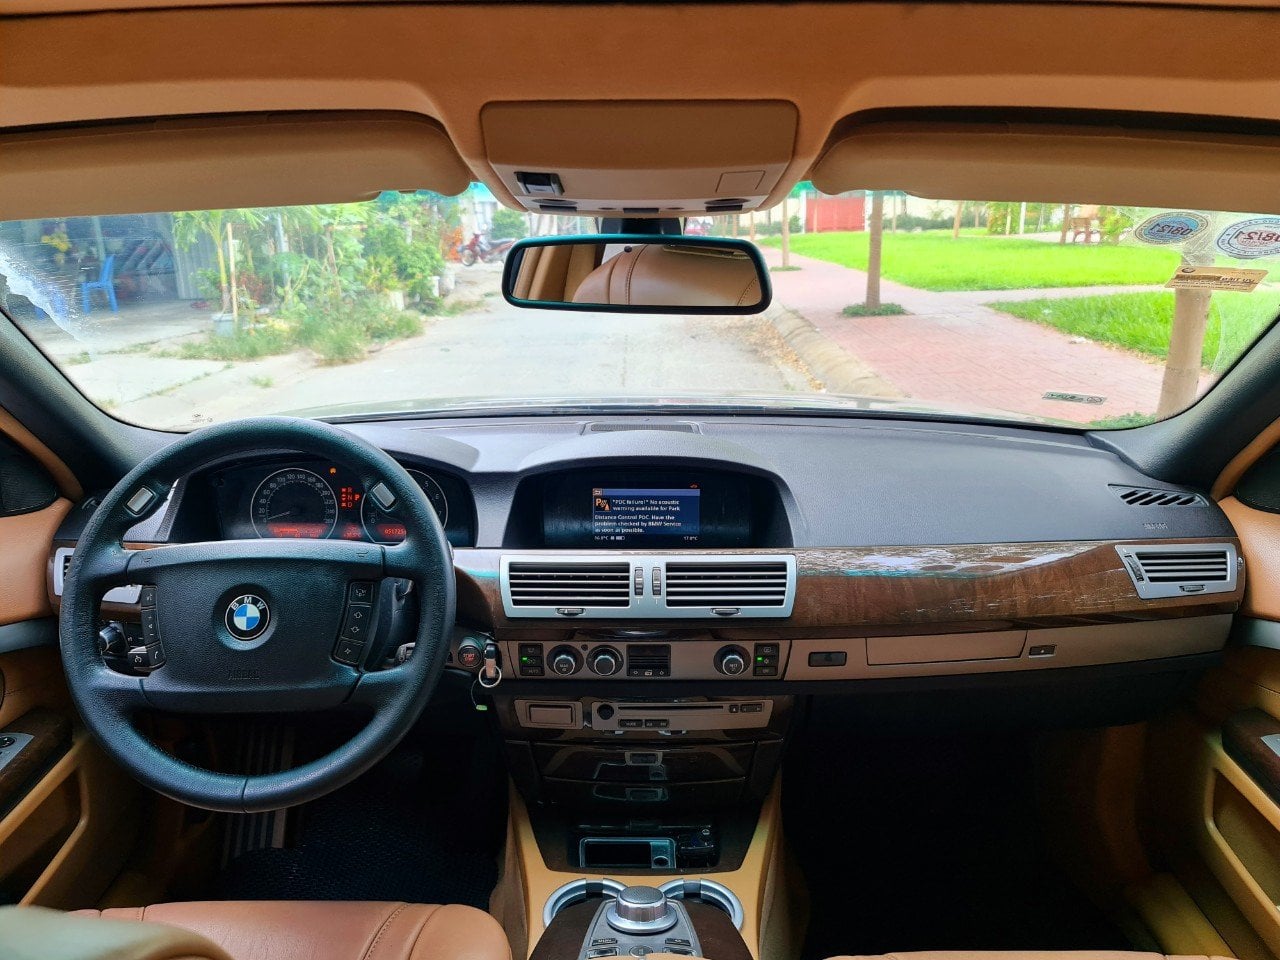 Gặp khó mùa dịch, đại gia chấp nhận giảm giá tới 4 lần để bán được BMW 7-Series 13 năm tuổi - Ảnh 3.